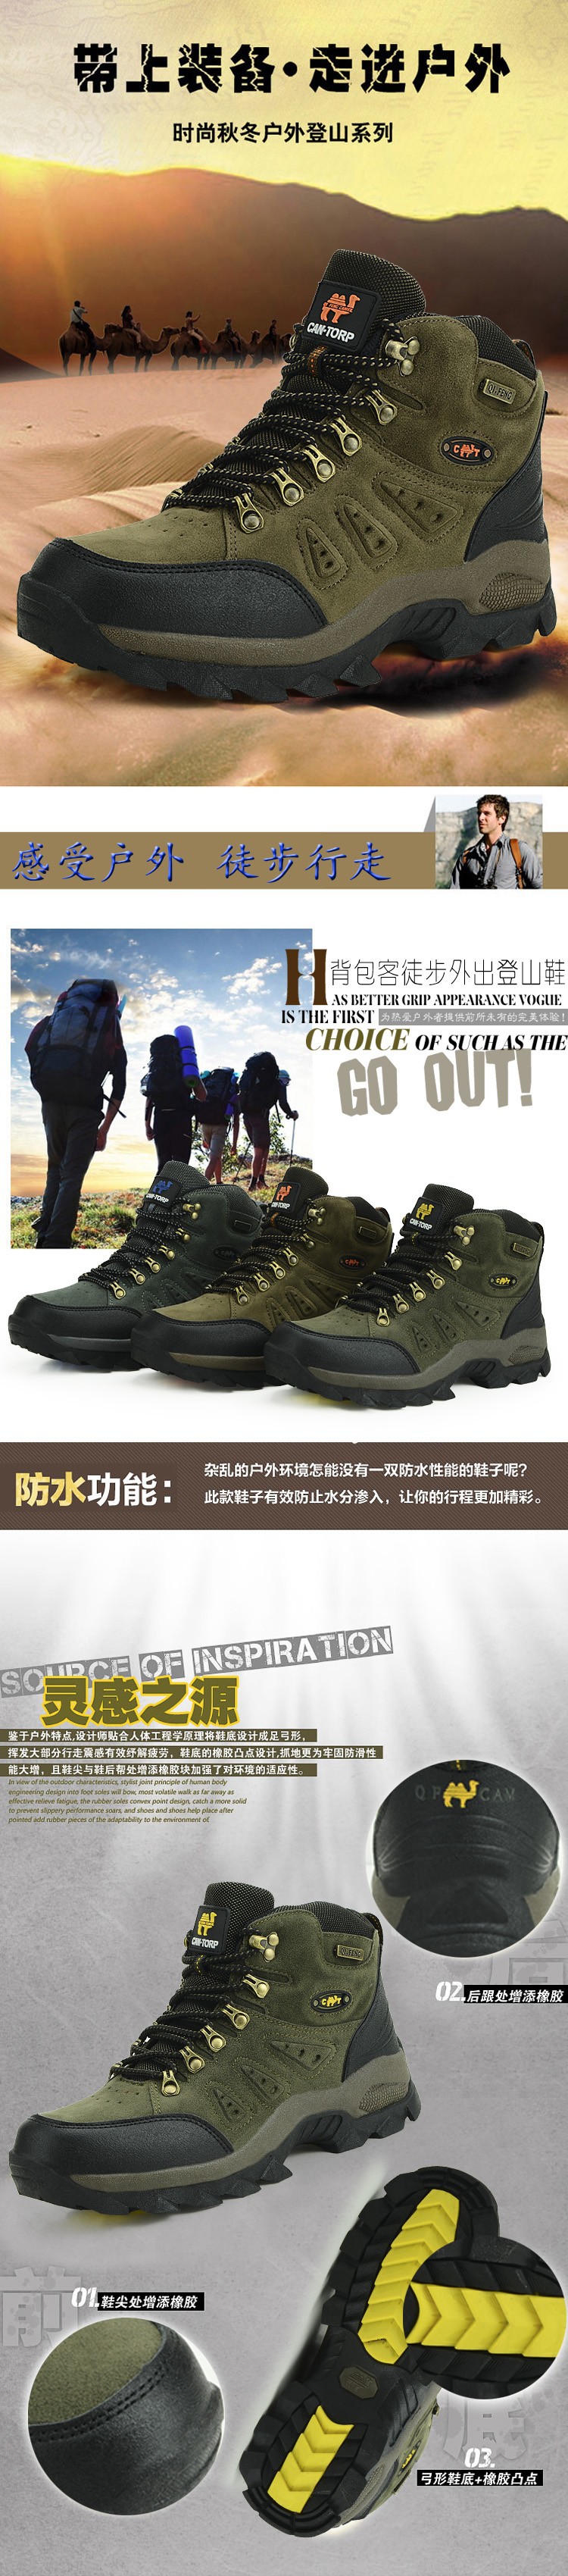 hiking shoes hs34d90 (6)